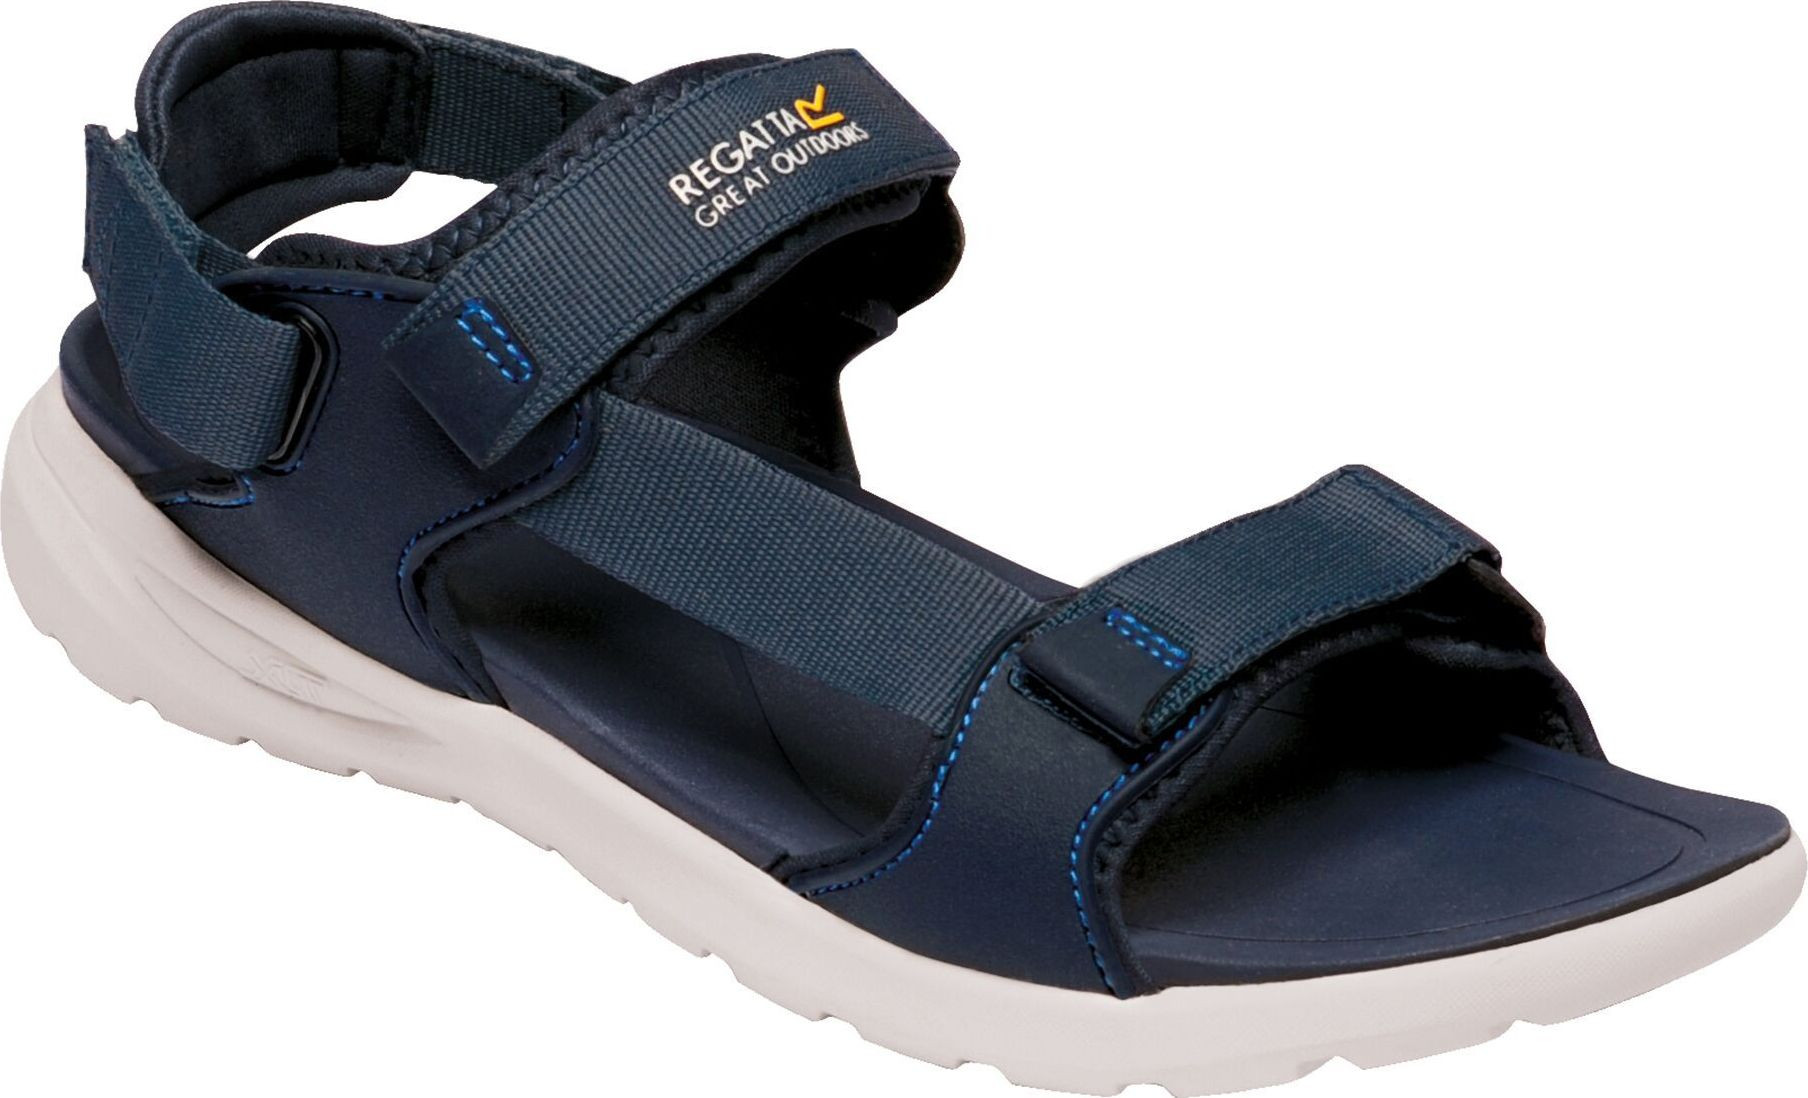 Pánské sandály REGATTA RMF658-5PM tmavě modré tmavě modré 46